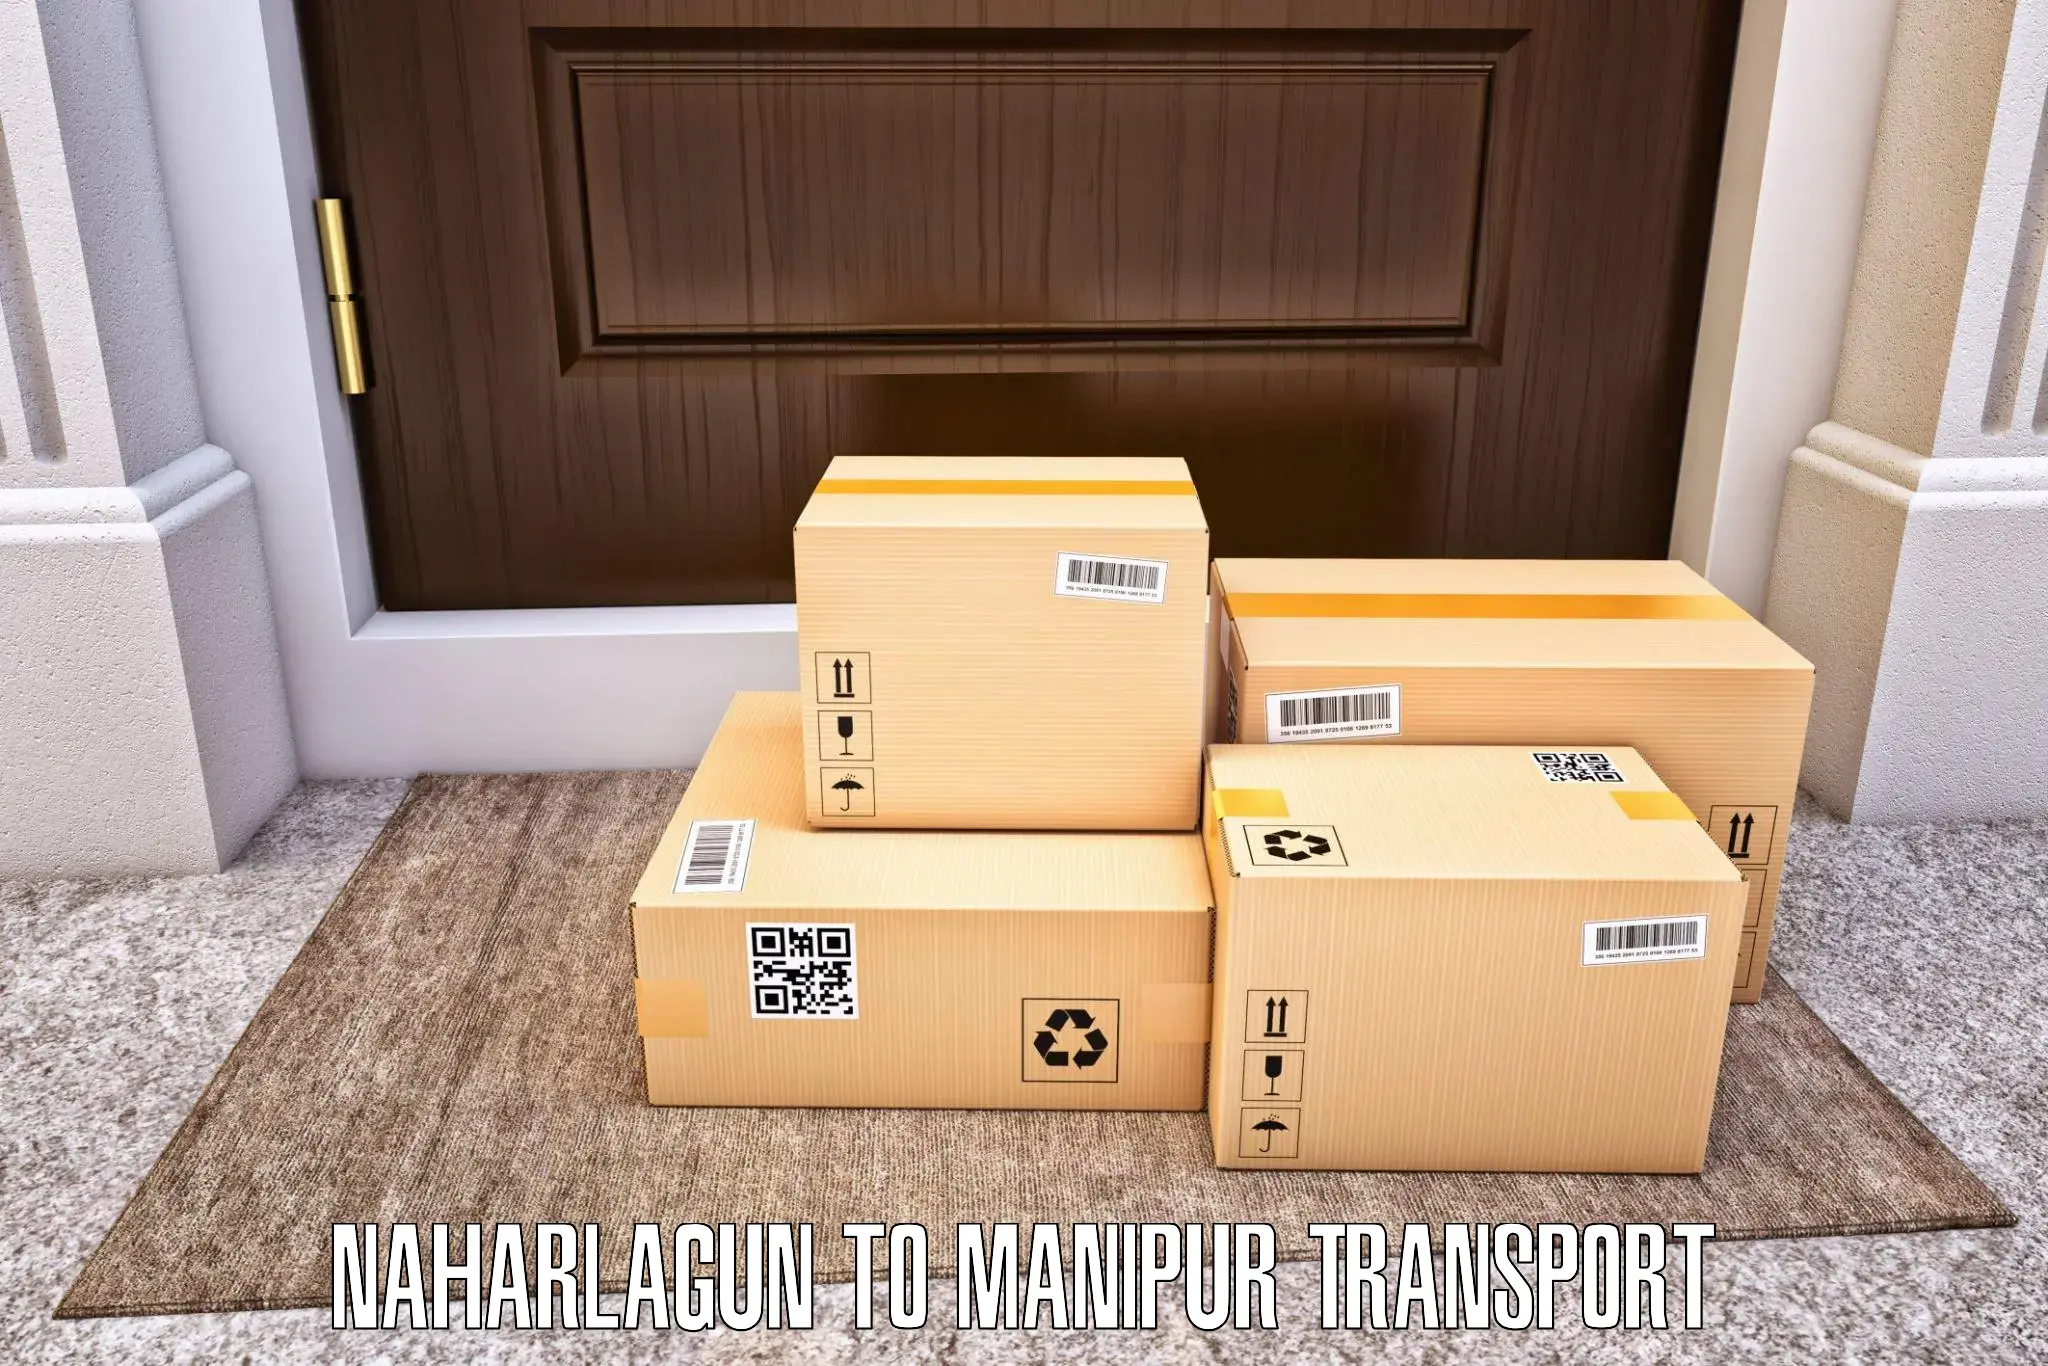 Online transport booking Naharlagun to Kanti